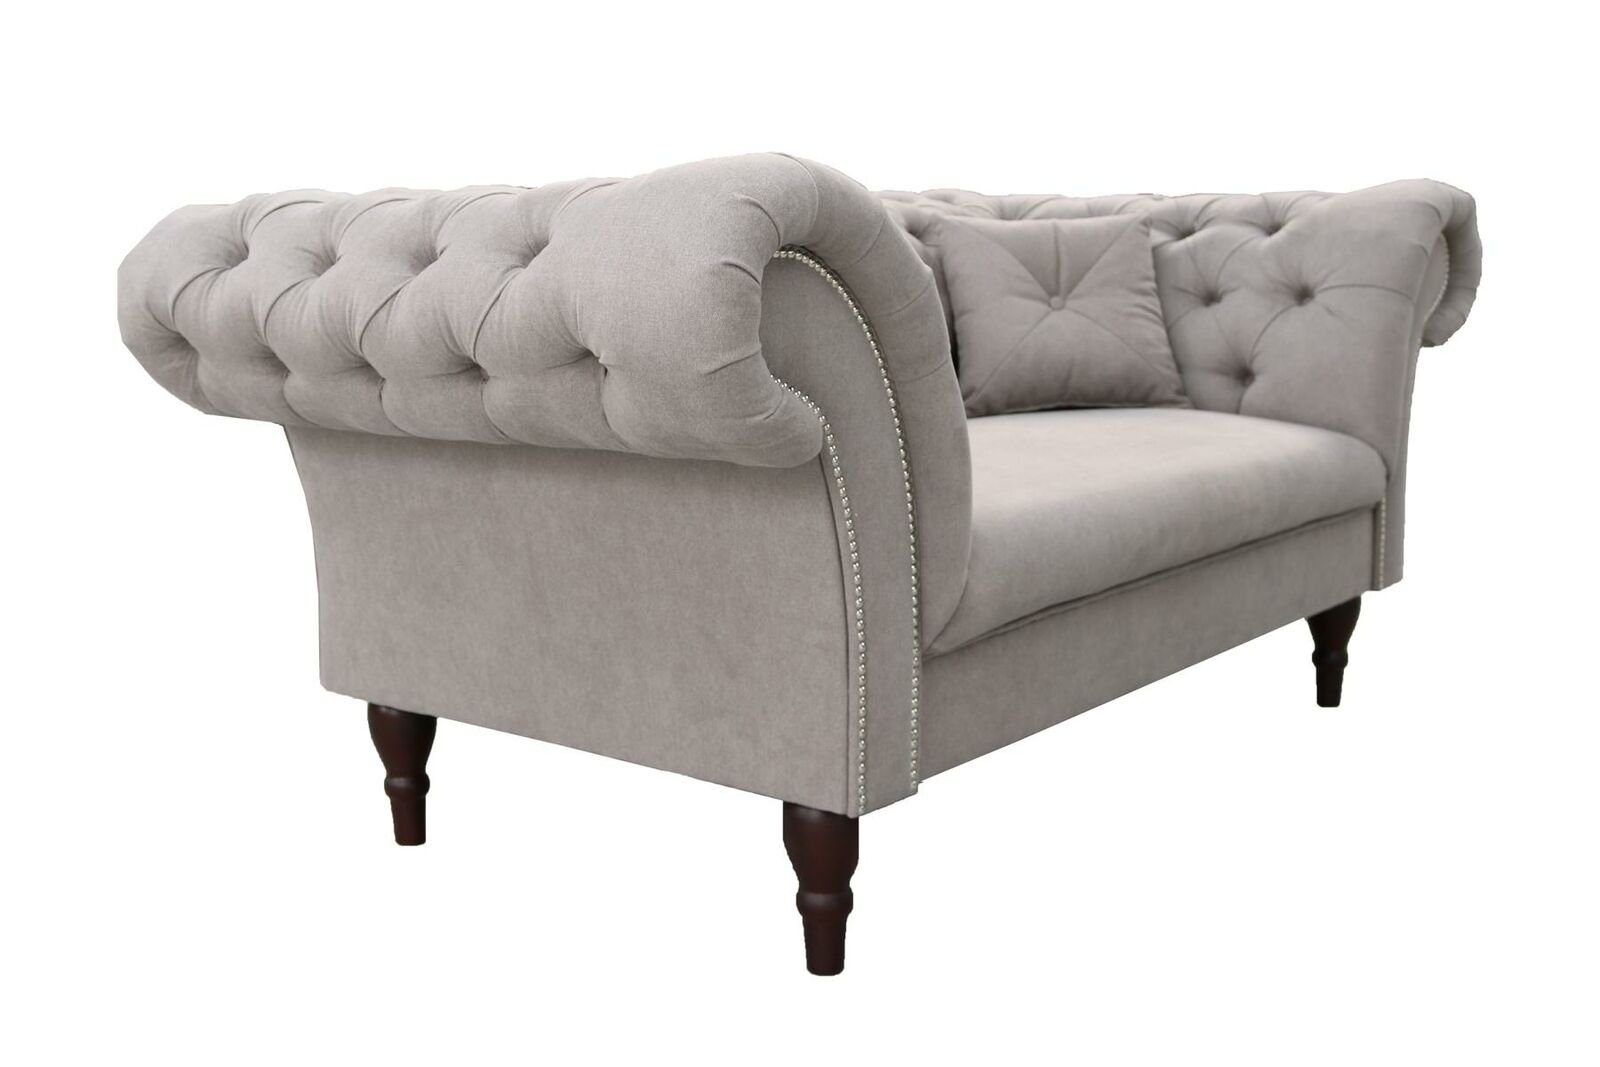 JVmoebel Sofa Grauer Made Brandneu, Chesterfield Couch Design in Luxus 3-er Dreisitzer Europe Möbel